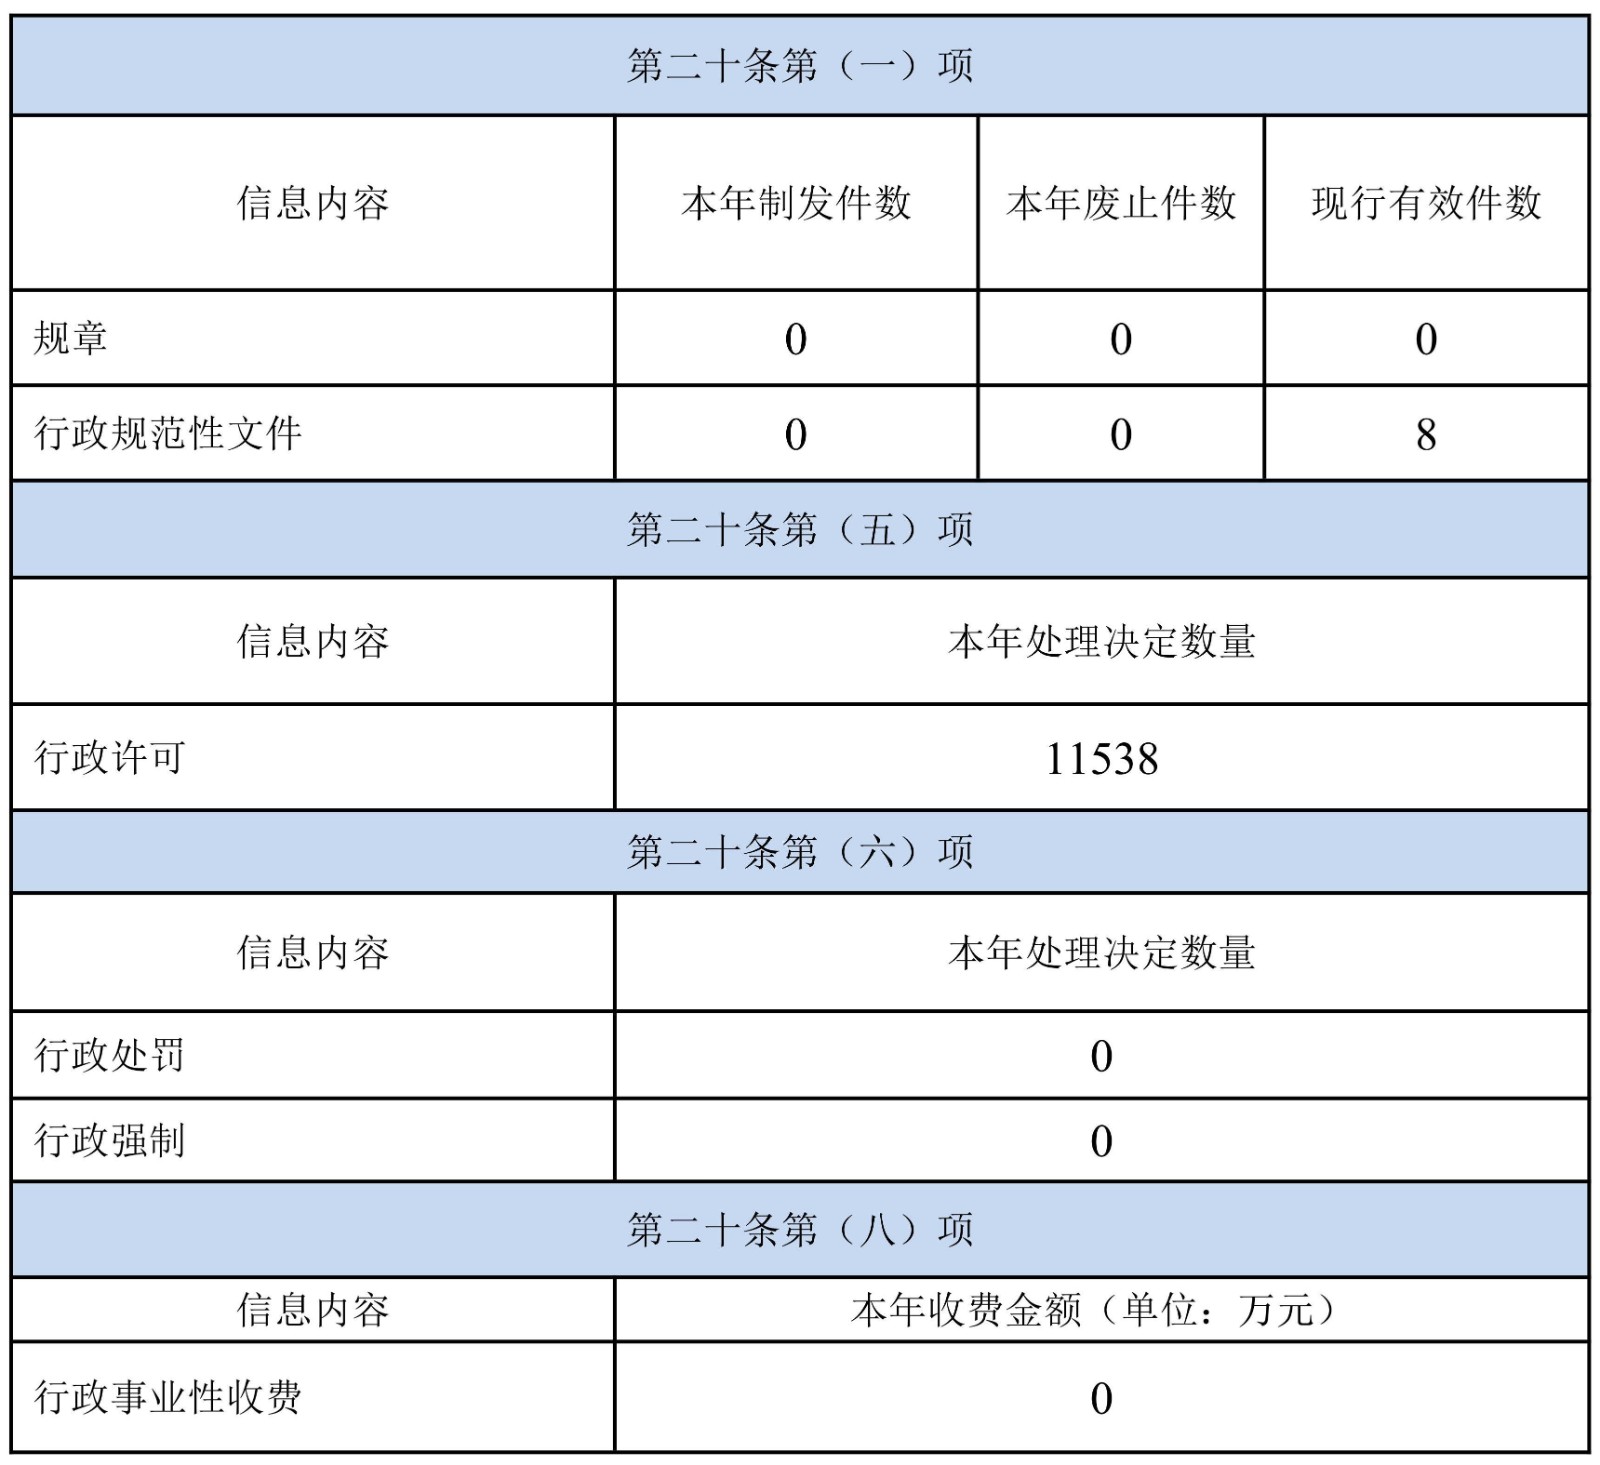 启东市行政审批局2022年政府信息公开工作年度报告·改_03.jpg